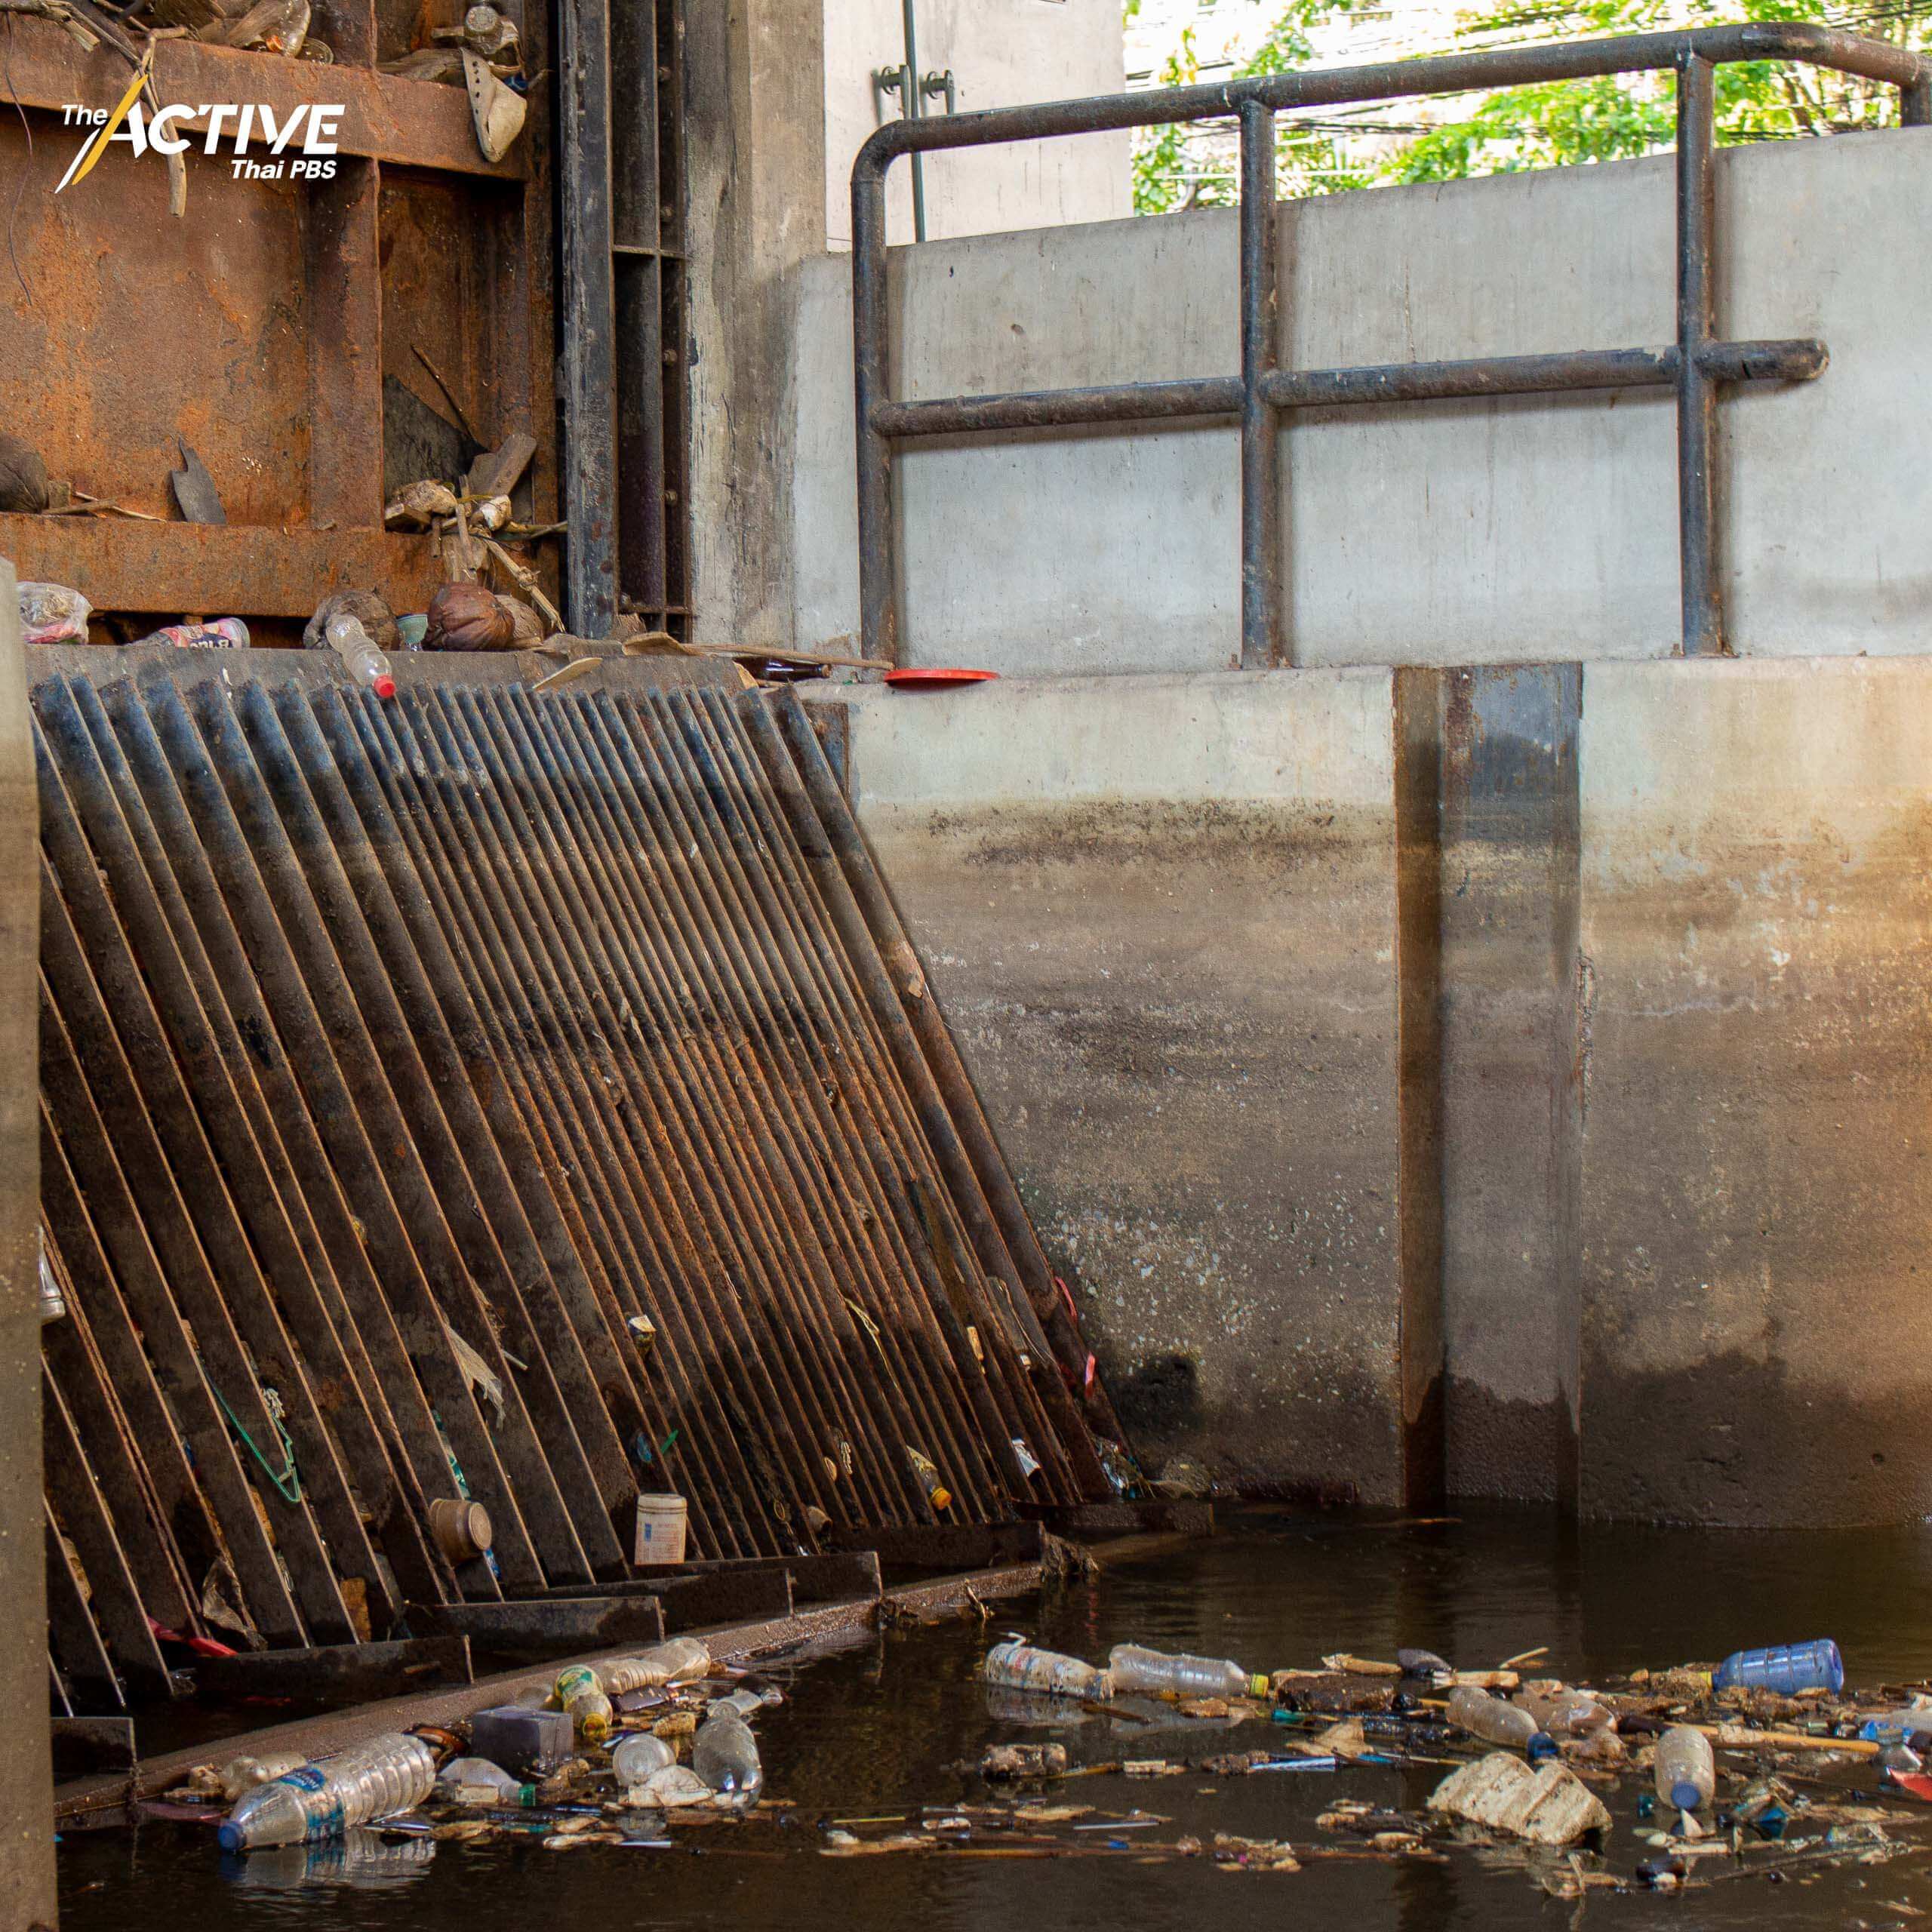 "เจ้าพระยา" เป็นแม่น้ำสายหลักของกรุงเทพฯ และยังเป็นที่รองรับขยะของเมืองด้วยเช่นกัน ขณะที่แม่น้ำเจ้าพระยายังคงถูกใช้อุปโภคเพื่อการขัดล้างท่าเรือ มันยังพัดพาขยะพลาสติกกว่า 4 พันตันจากครัวเรือนไหลลงปากอ่าวไทยทุกปี